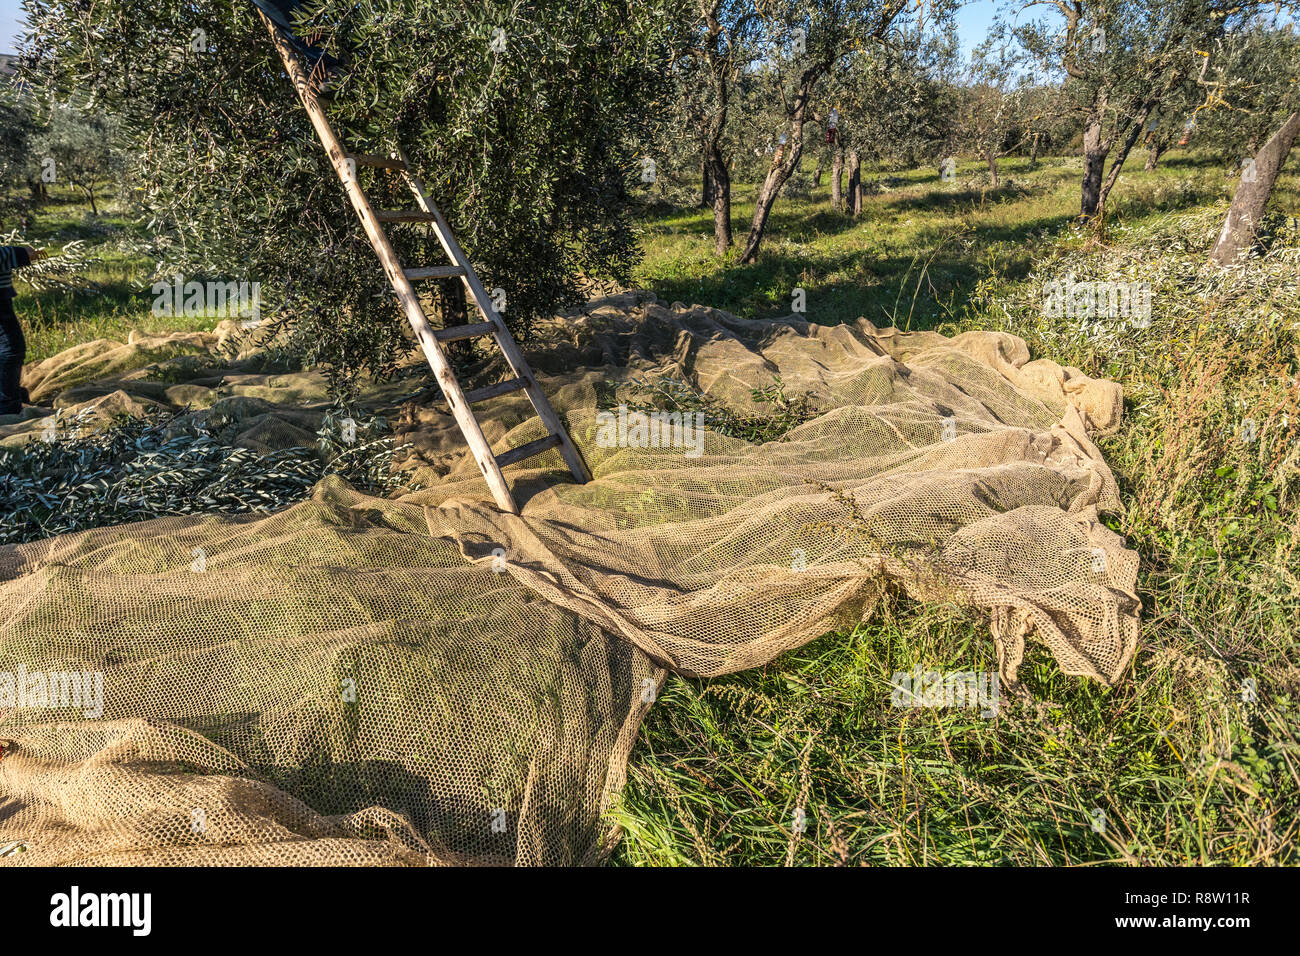 Organisé dans le cadre de Net Olivier pour la récolte et la collecte d'olive avec échelle en bois Banque D'Images